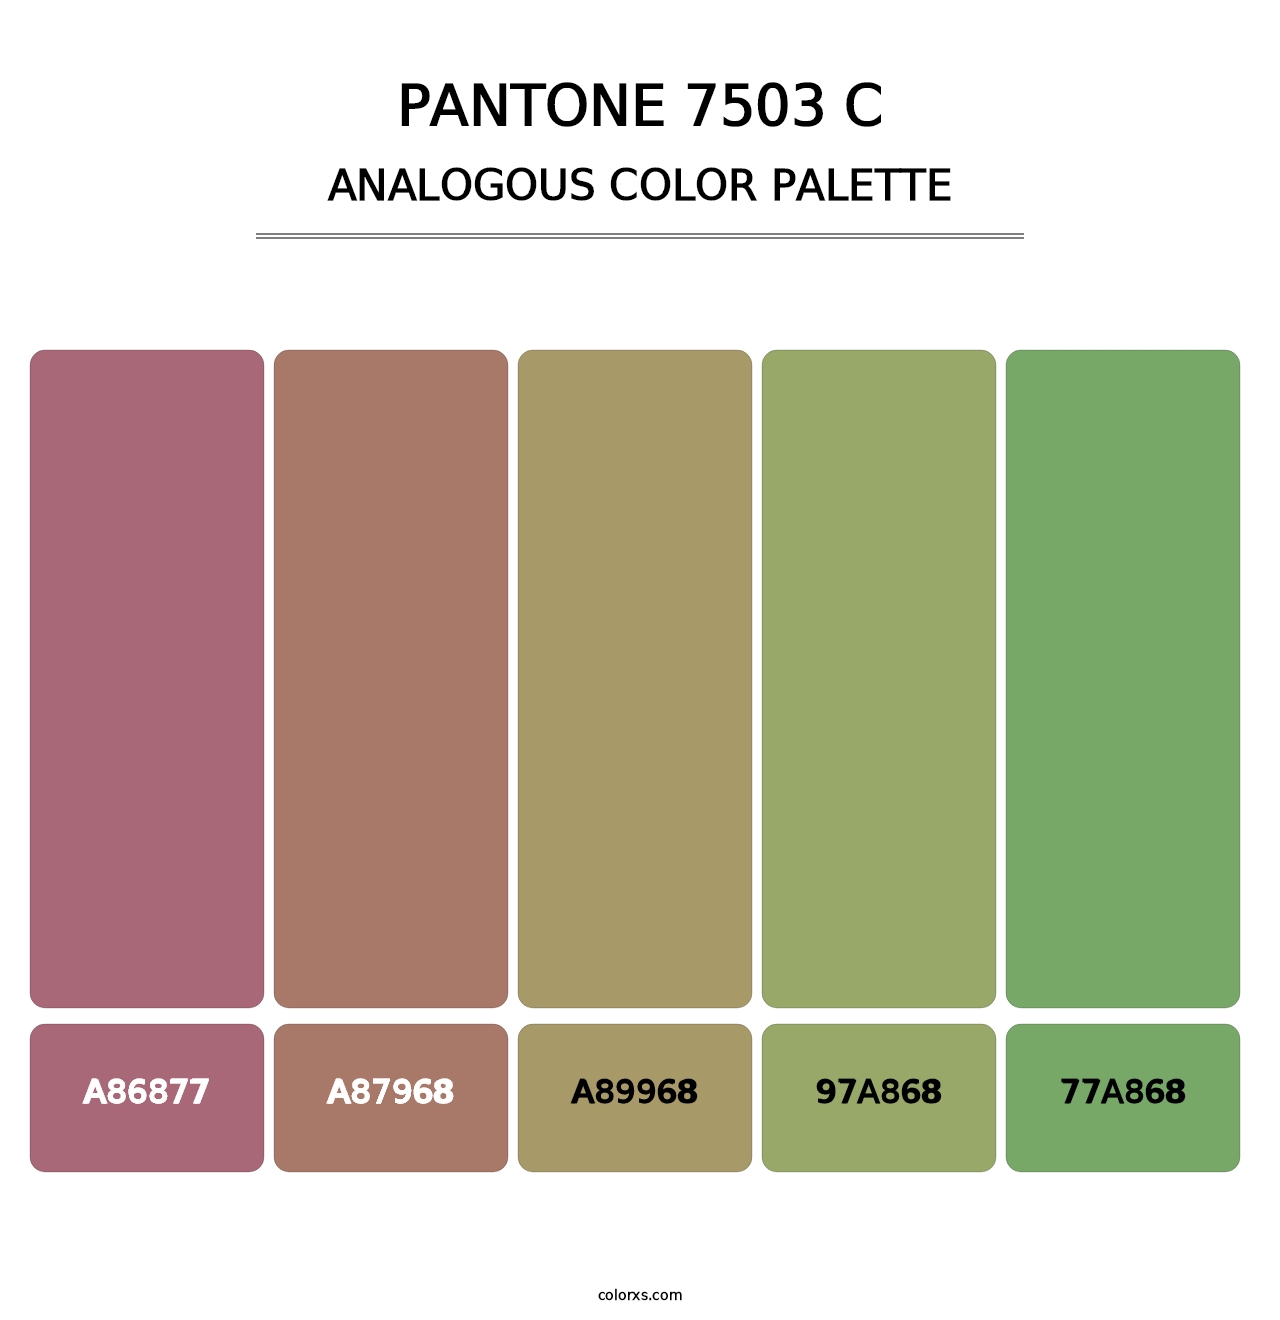 PANTONE 7503 C - Analogous Color Palette